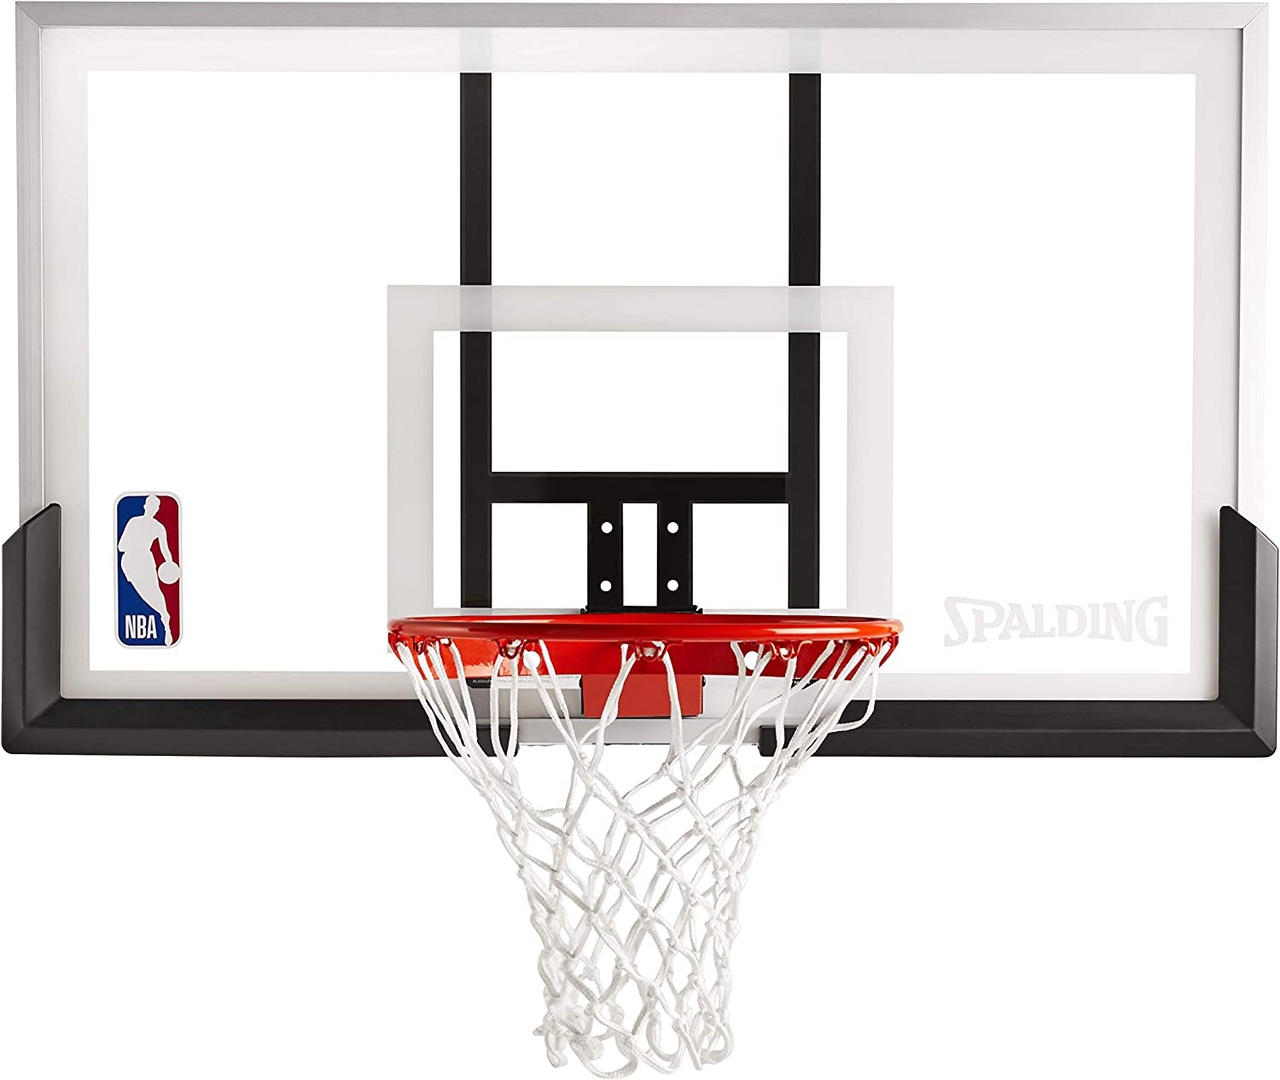 deportes - Tablero de basket basketball baloncesto nueva en acrilico con aro, malla y bola